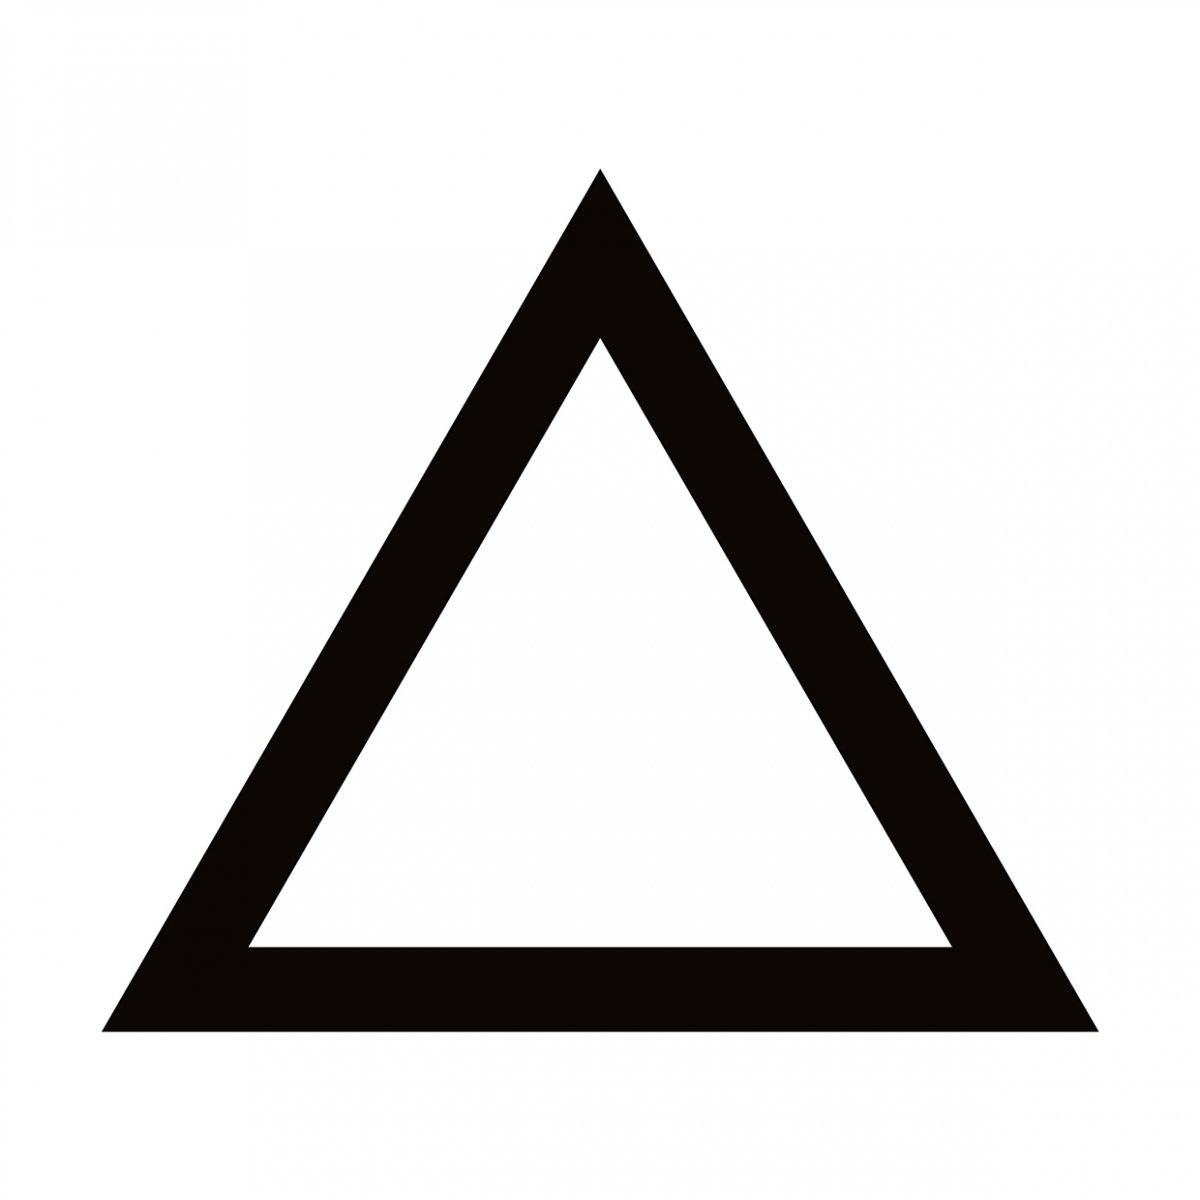 Imagen en la que se ve un triángulo con el trazo en color negro